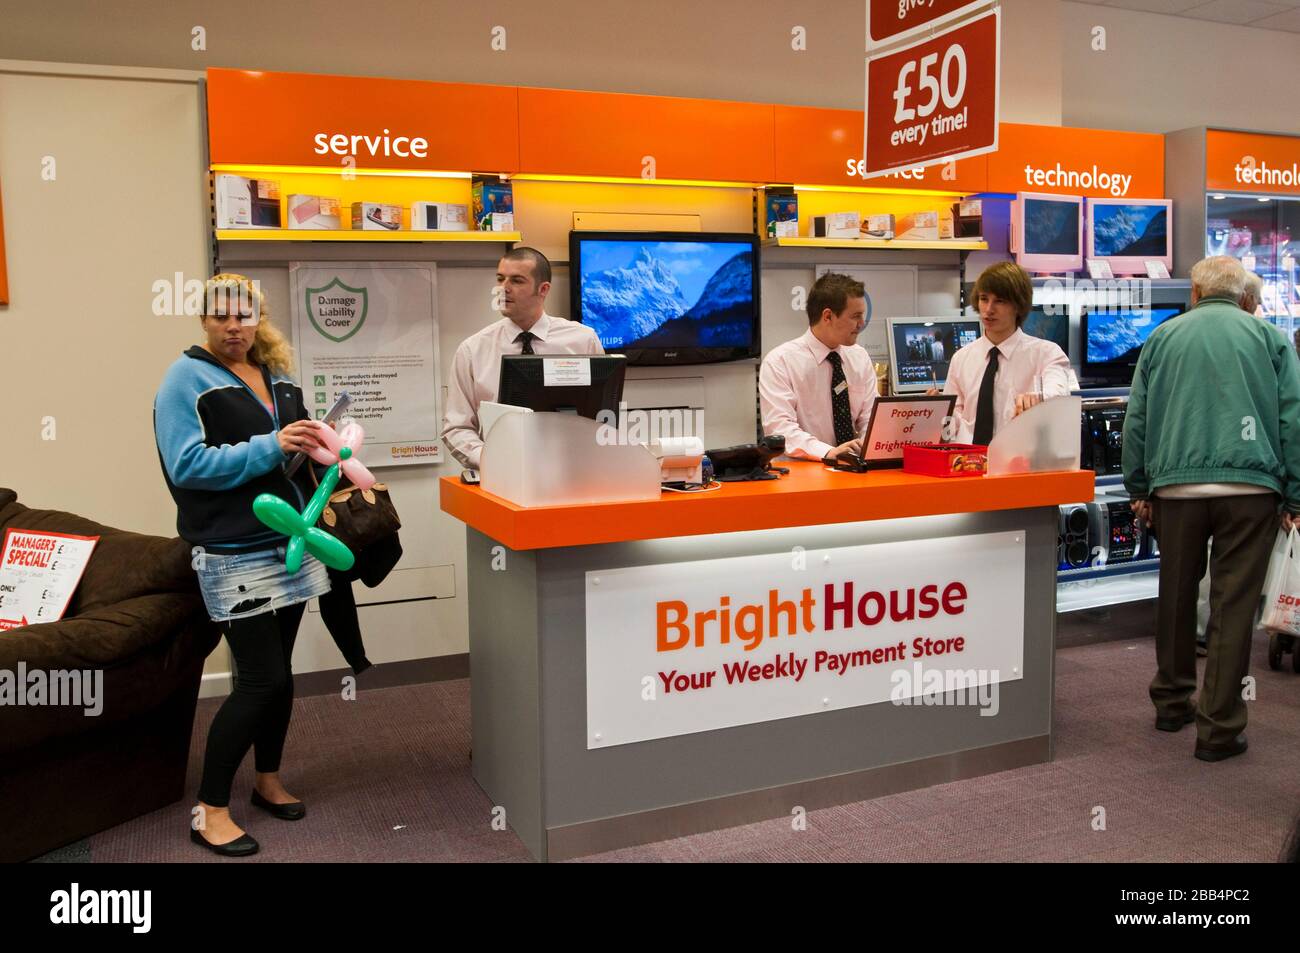 BrightHouse Stores, UK, 30th marzo 2020 rivenditore di locazione a proprio nome, BrightHouse ha presentato domanda di amministrazione, dopo una serie di richieste di risarcimento e le restrizioni contro il virus Conravirus sui dettaglianti che forzano la chiusura dei negozi. Immagine del file dalle aperture del punto vendita Foto Stock